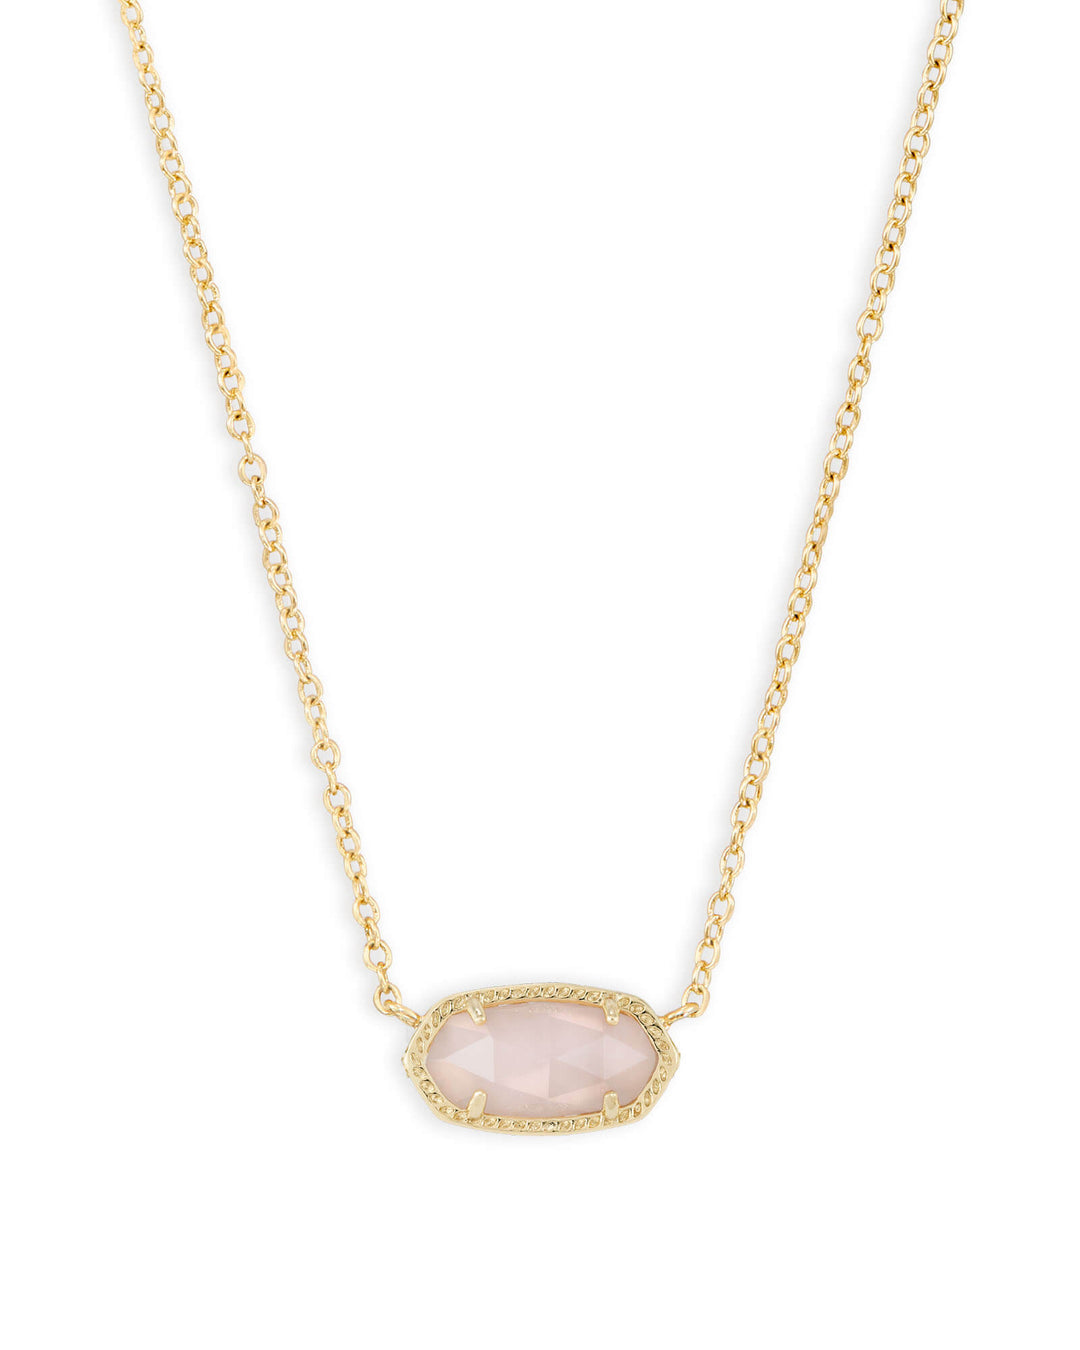 Kendra Scott Elisa Gold Pendant Necklace in Rose Quartz